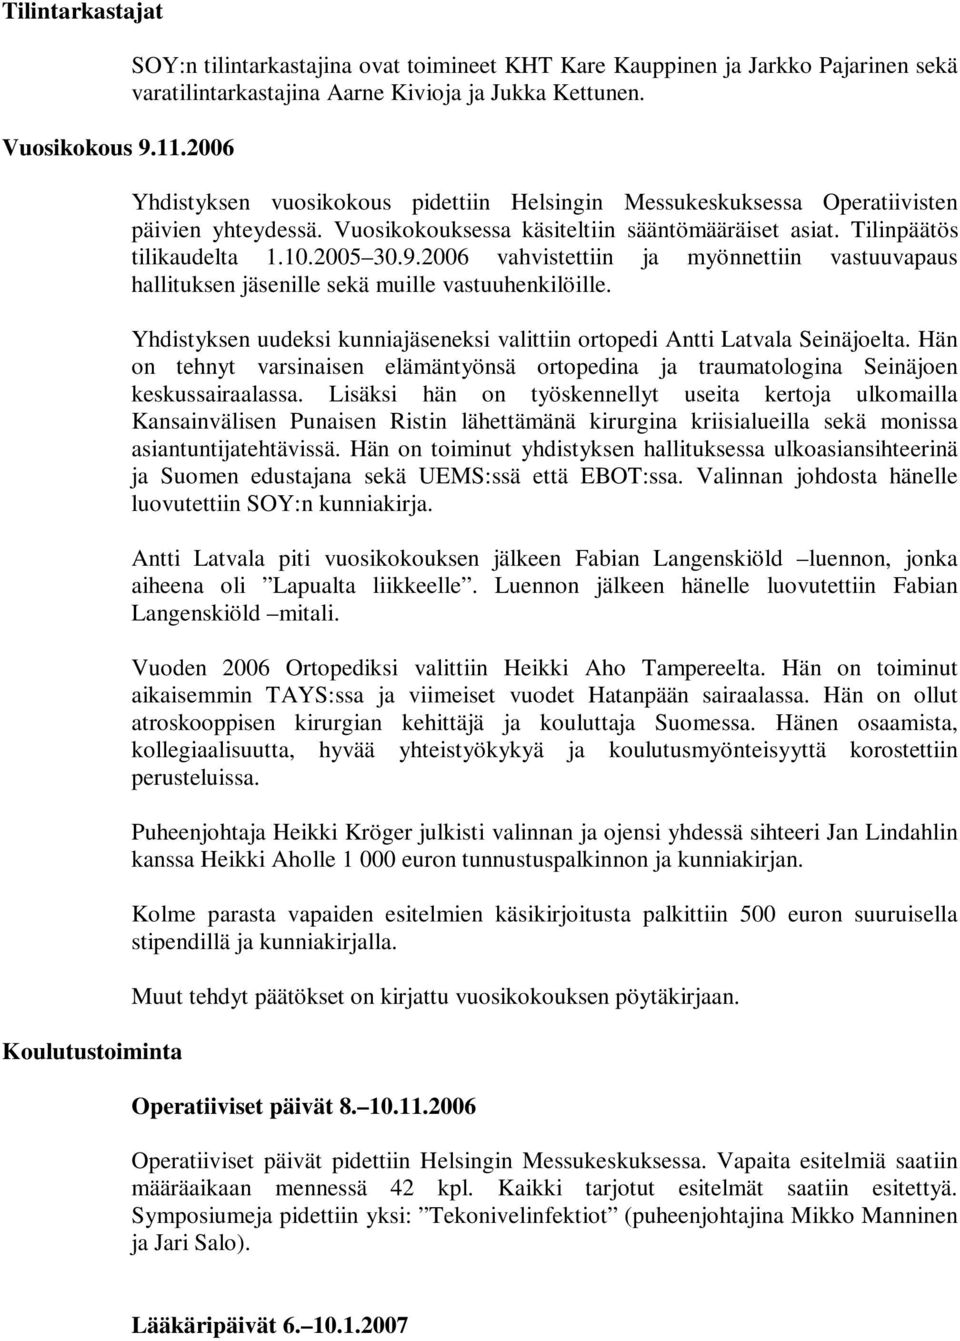 2006 vahvistettiin ja myönnettiin vastuuvapaus hallituksen jäsenille sekä muille vastuuhenkilöille. Yhdistyksen uudeksi kunniajäseneksi valittiin ortopedi Antti Latvala Seinäjoelta.